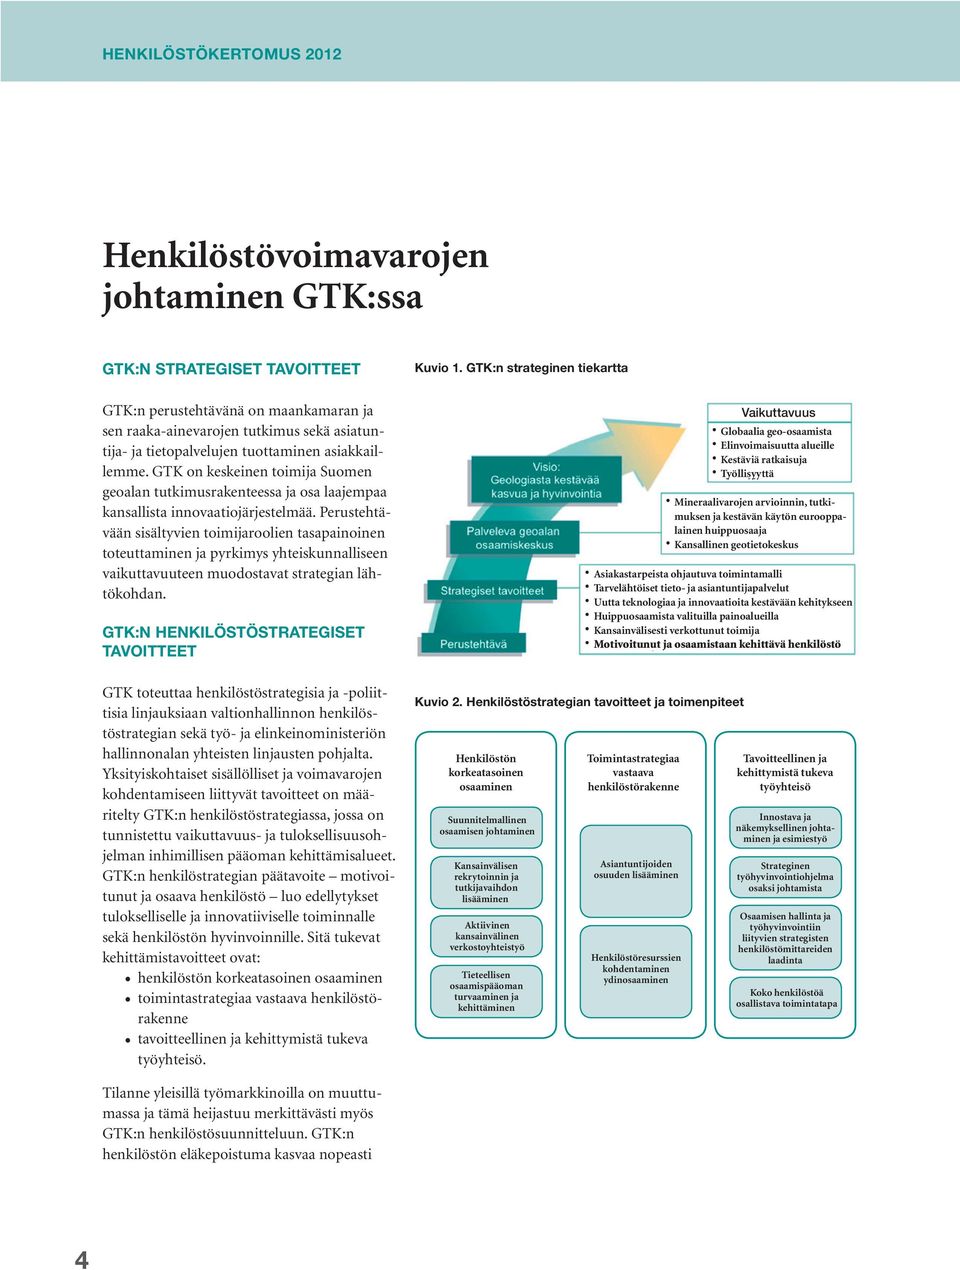 GTK on keskeinen toimija Suomen geoalan tutkimusrakenteessa ja osa laajempaa kansallista innovaatiojärjestelmää.